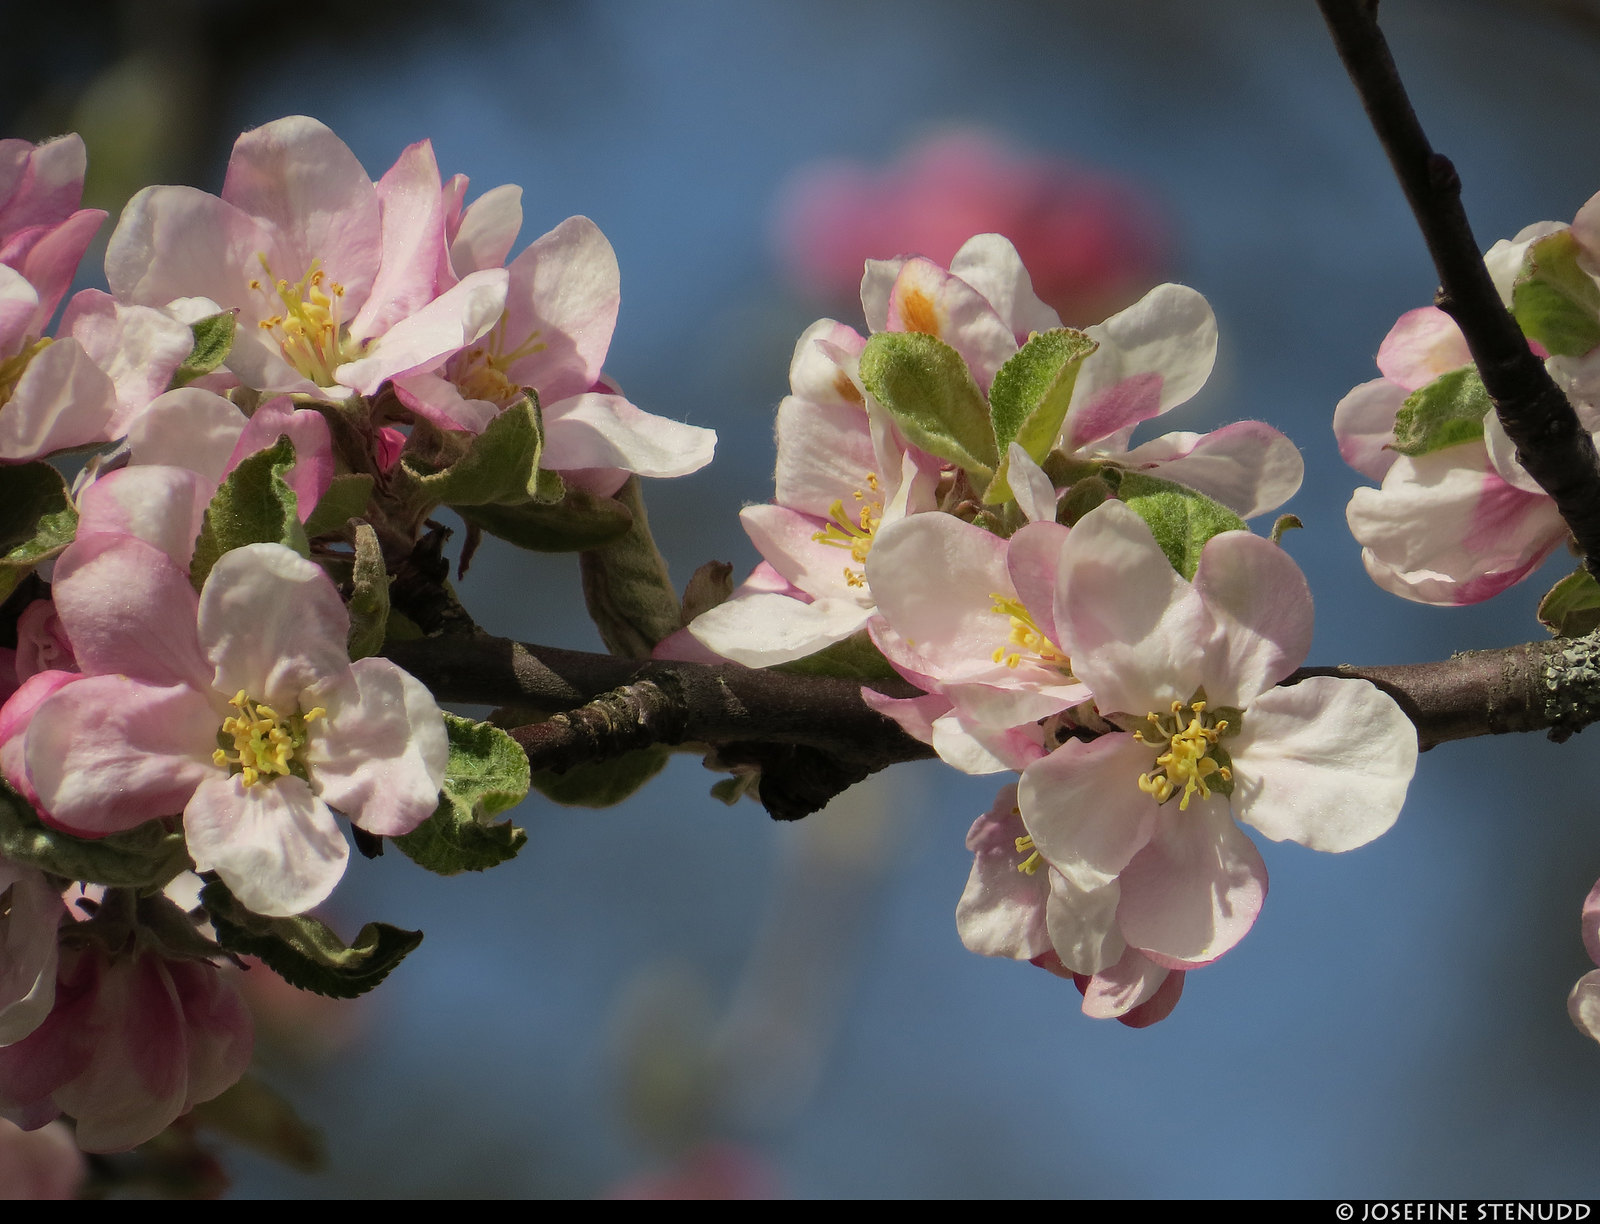 20200519_10k Apple blossoms in Strömstad, Sweden